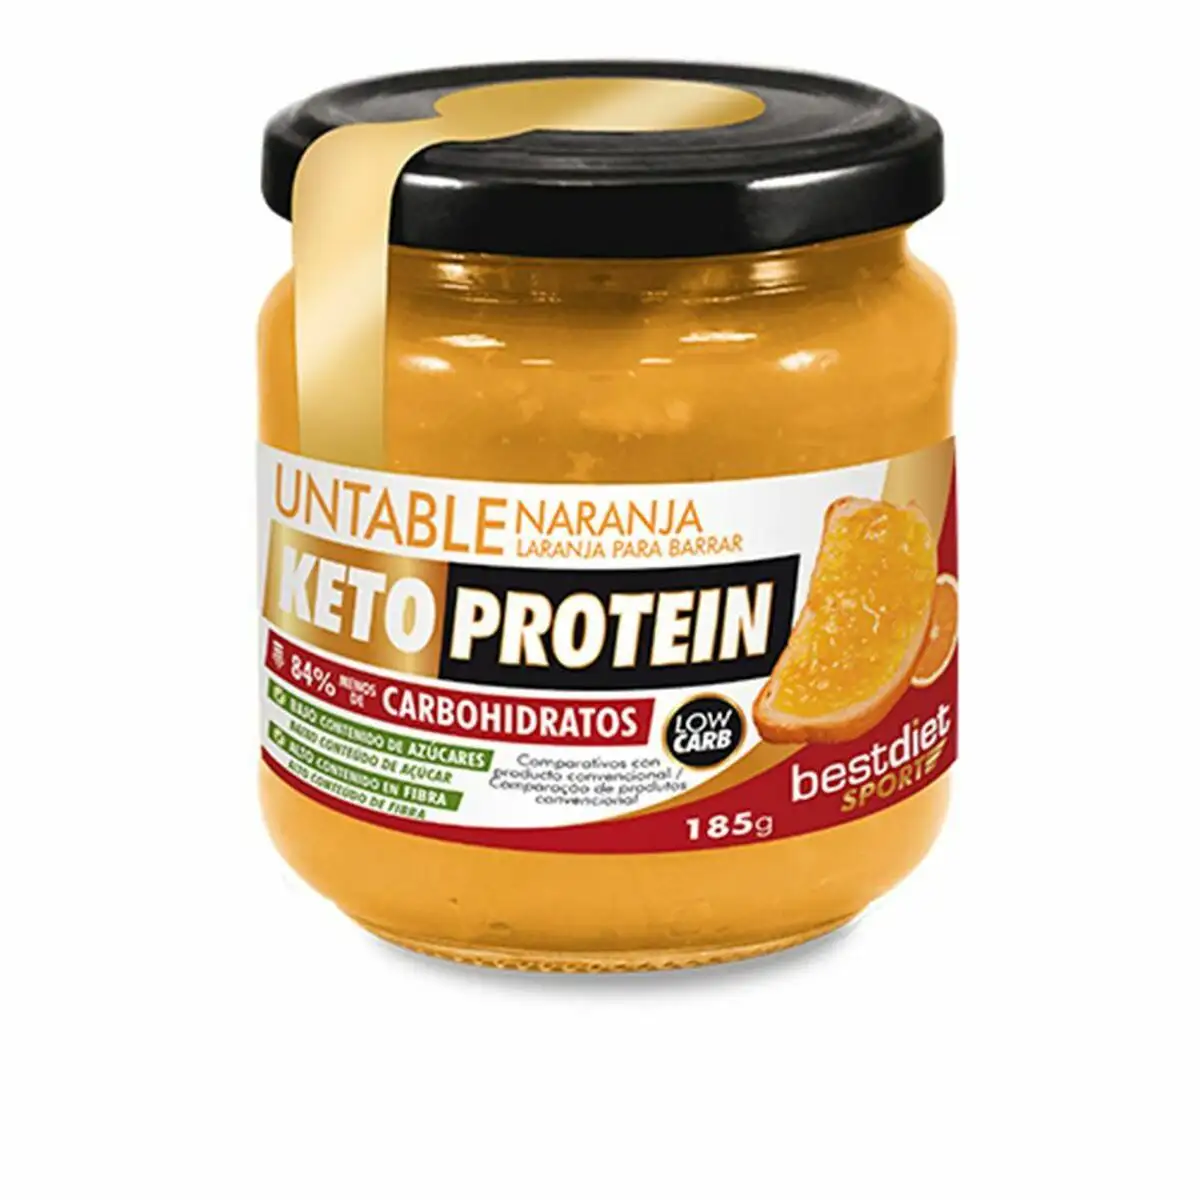 Marmelade keto protein untable proteine orange 185 g_4618. Bienvenue chez DIAYTAR SENEGAL - Votre Porte d'Accès à la Diversité. Découvrez notre boutique en ligne et choisissez parmi une pléthore d'articles qui célèbrent la richesse culturelle du Sénégal et au-delà.